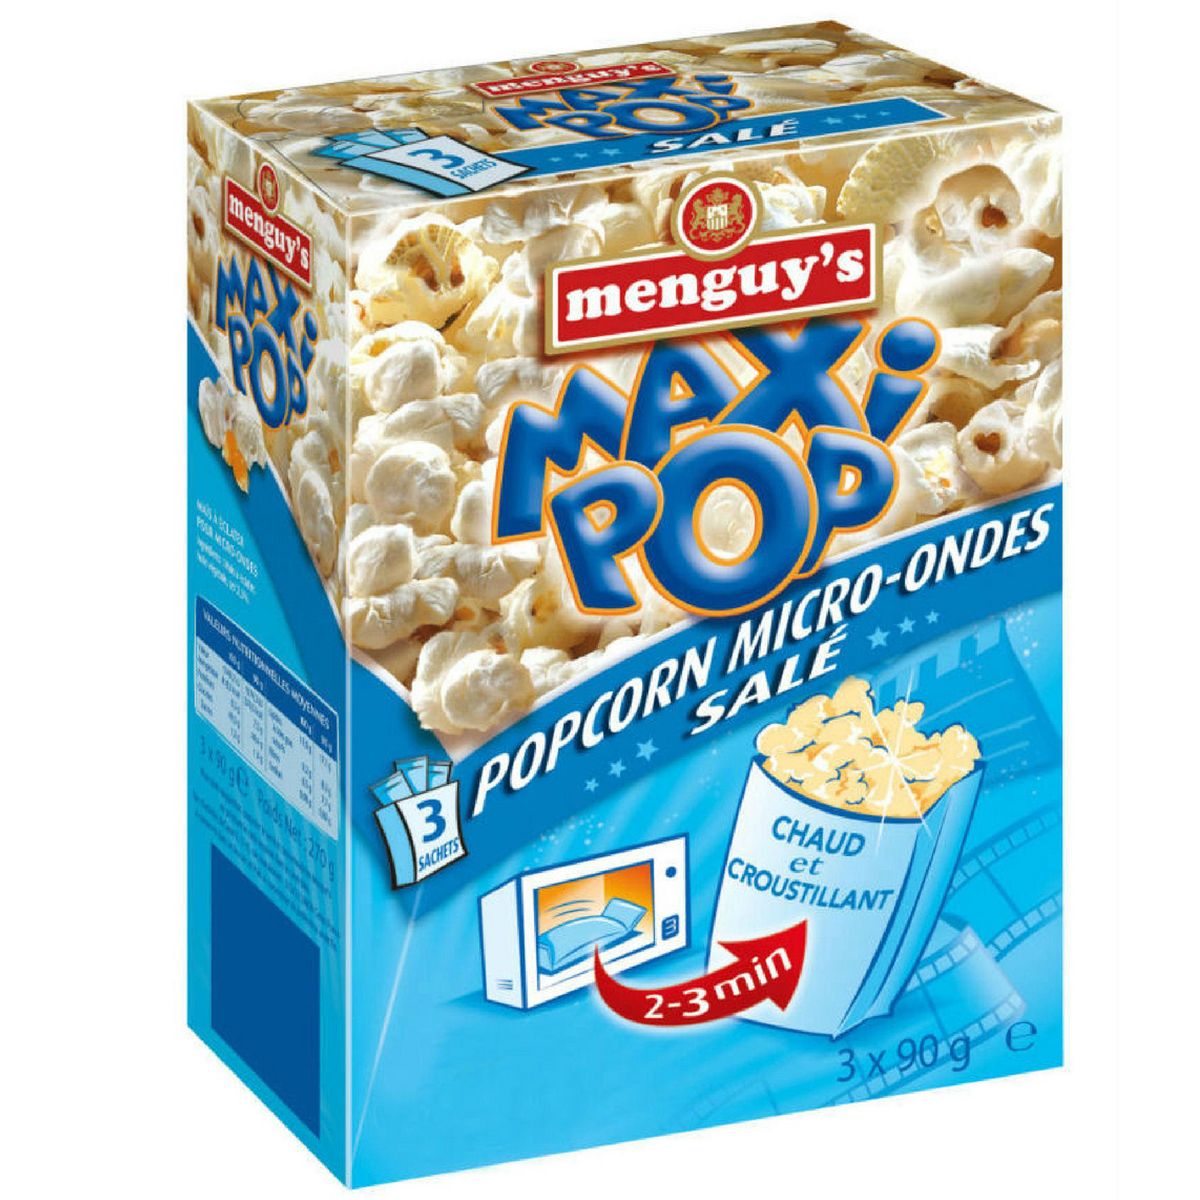 MENGUY'S Maxi pop corn goût salé micro-ondable 2-3 min sans OGM 3